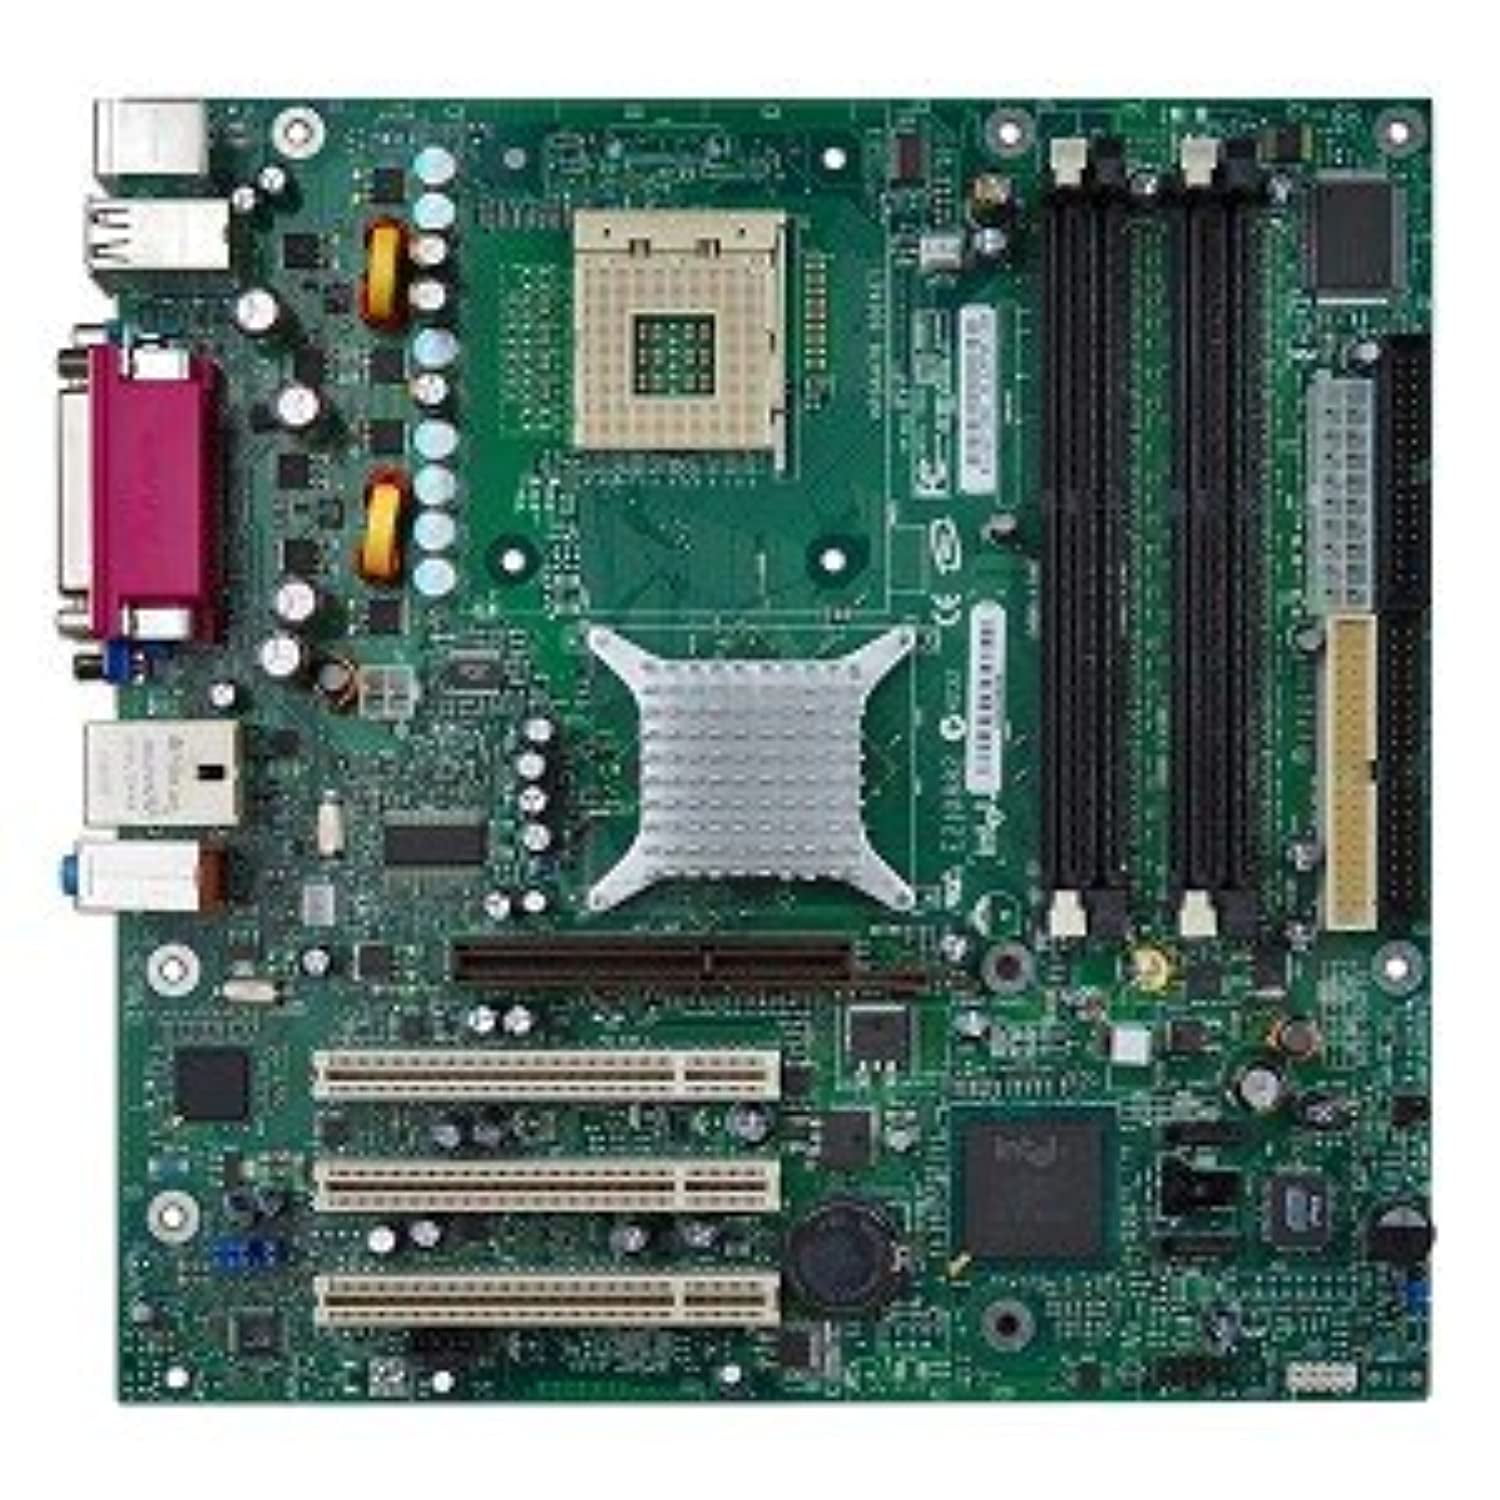 intel-d865glclk-intel-865g-socket-478-micro-atx-motherboard-w-video